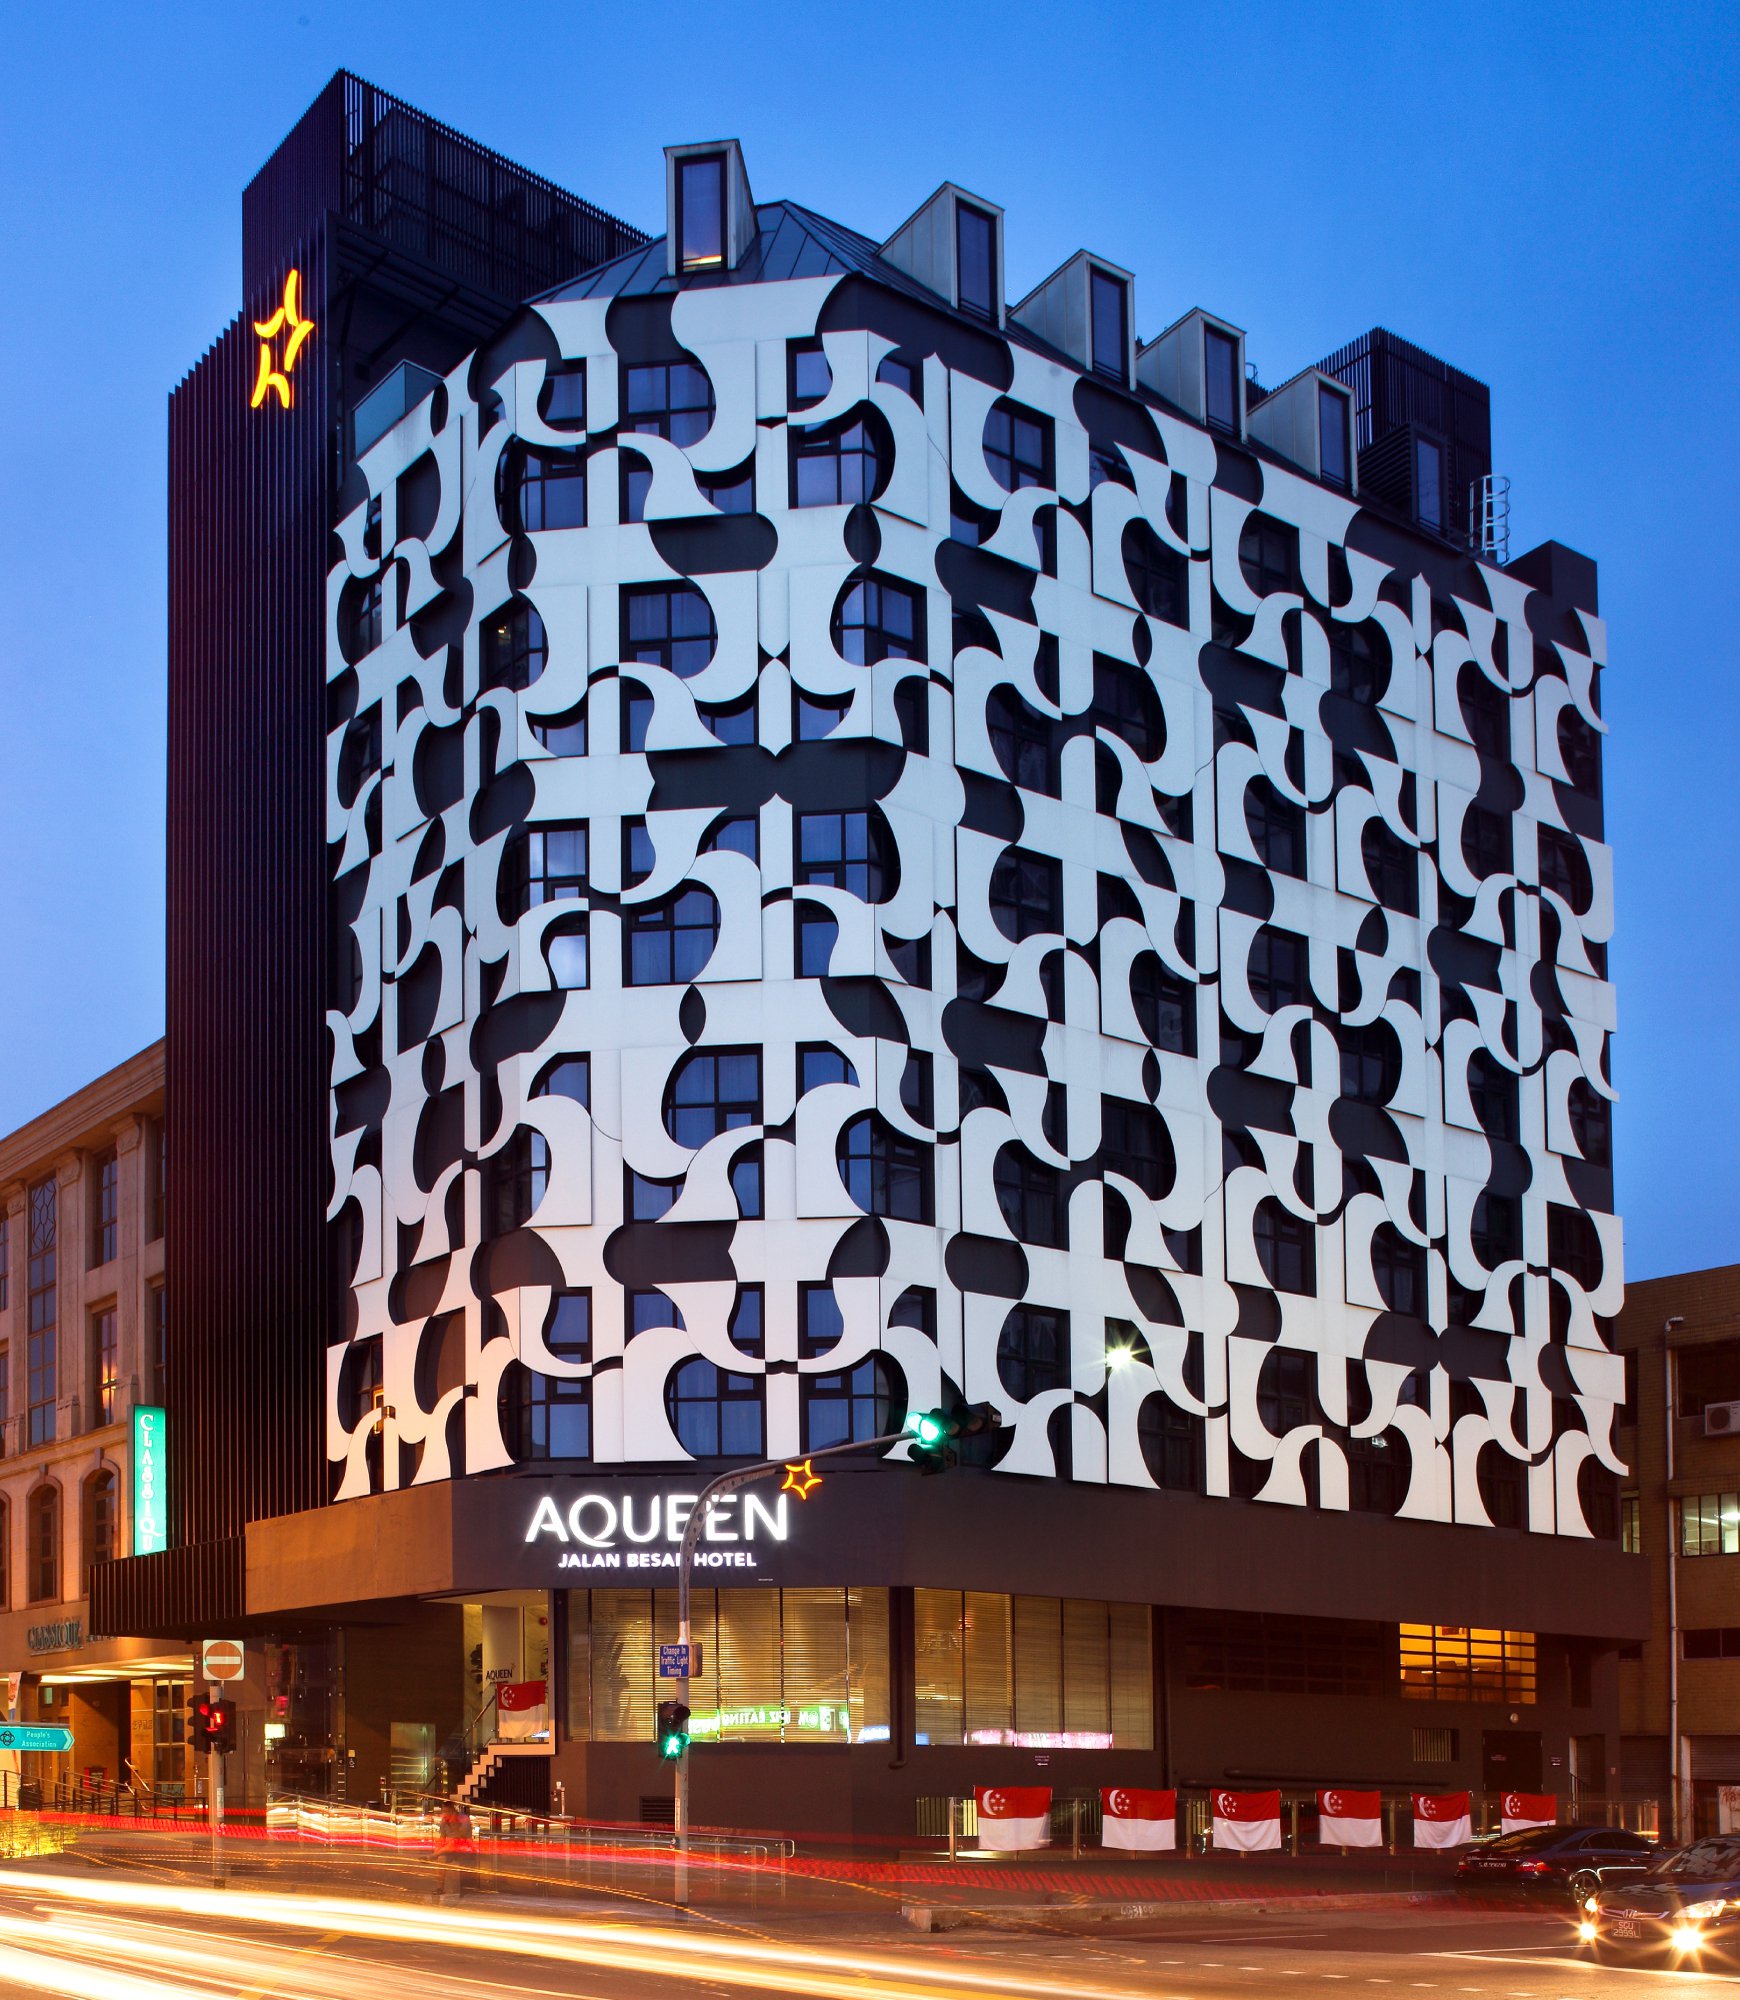 Image of AQUEEN Hotels